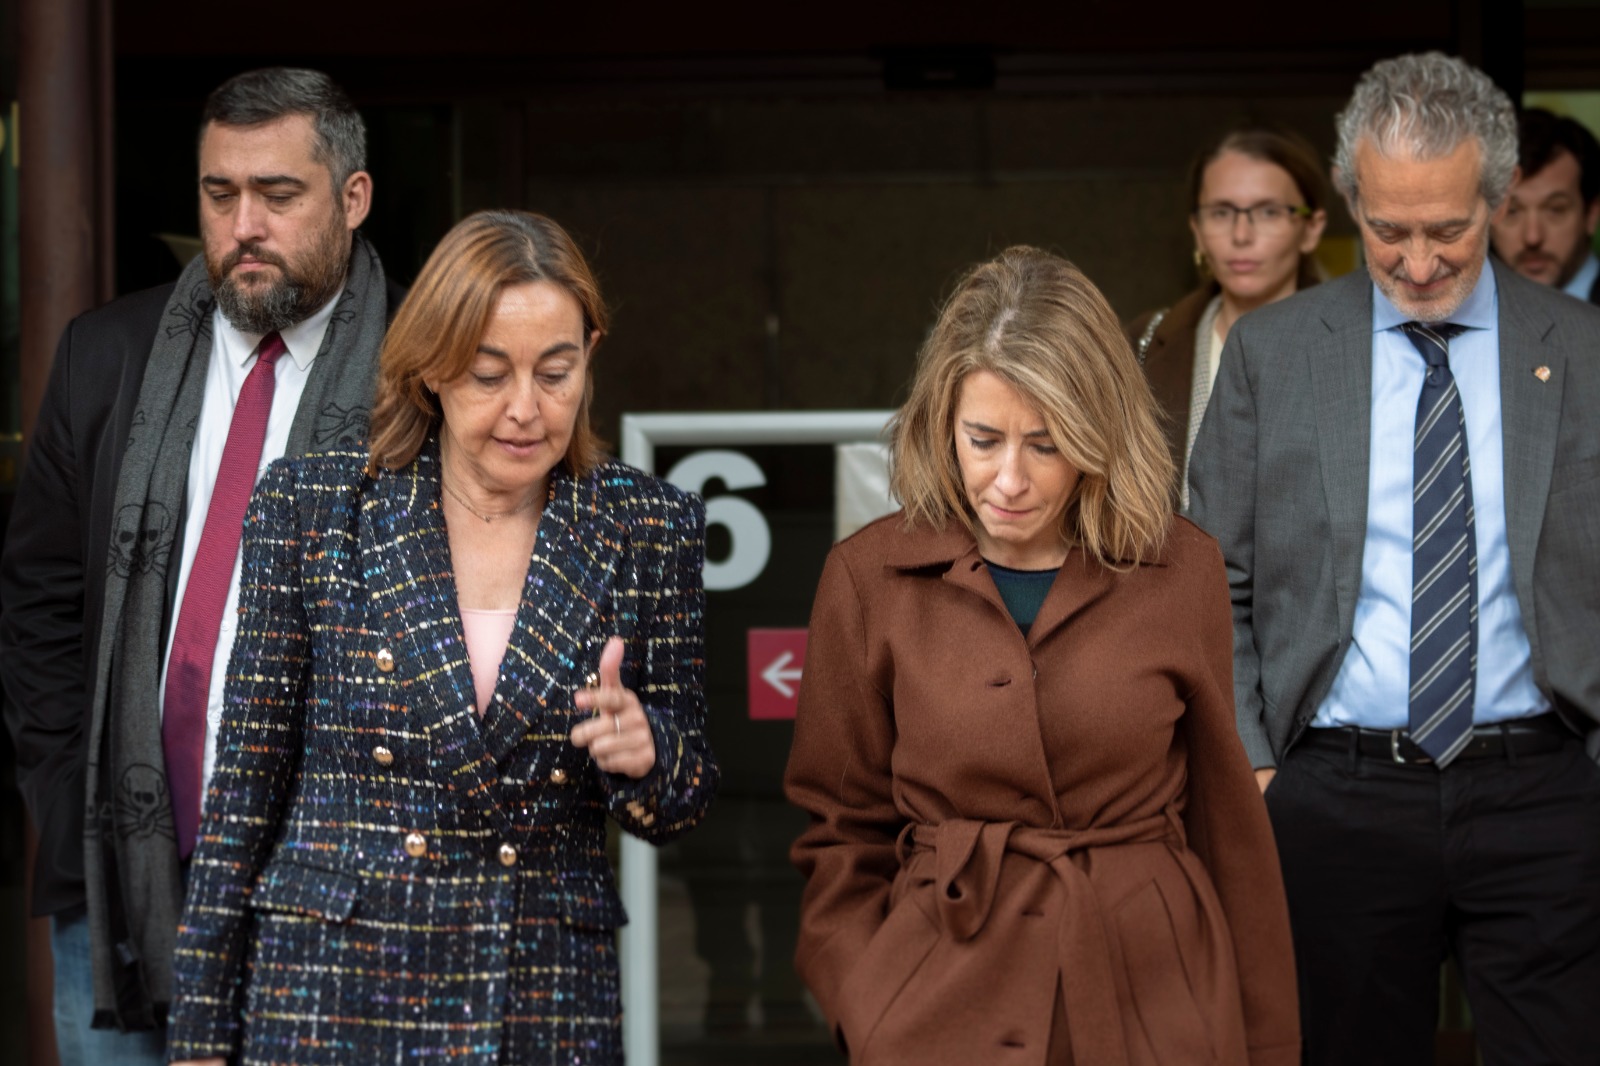 Sílvia Paneque: He traslladat a la ministra Raquel Sánchez, la voluntat de Girona per arribar a acords i trobar fons per l’Aeroport de Girona i carrer Barcelona